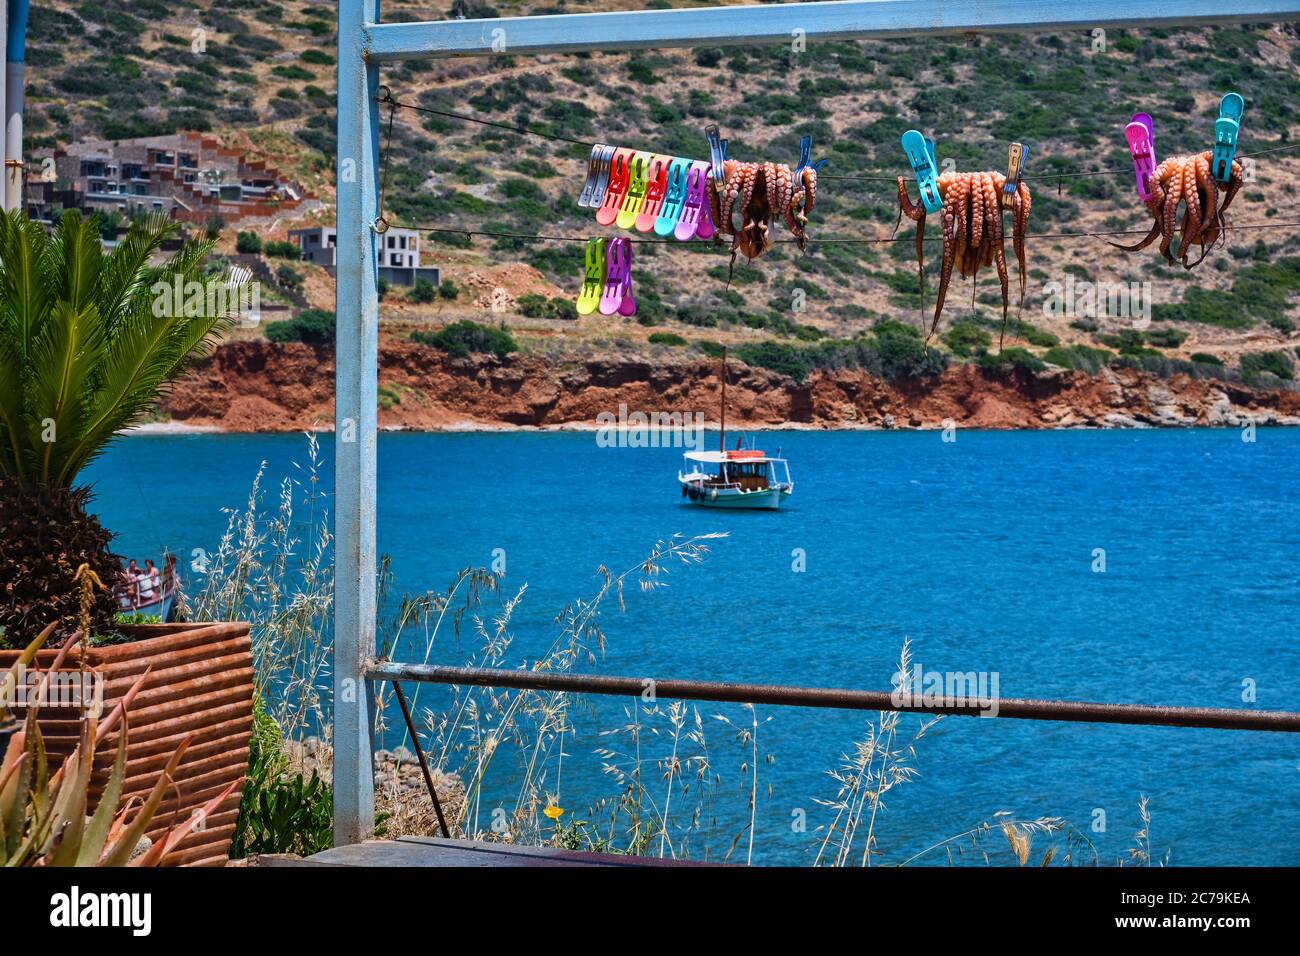 Polpi tradizionali essiccati al sole, fissati a corda con le tipiche colline greche e la barca dei pescatori sullo sfondo, Creta, Grecia Foto Stock